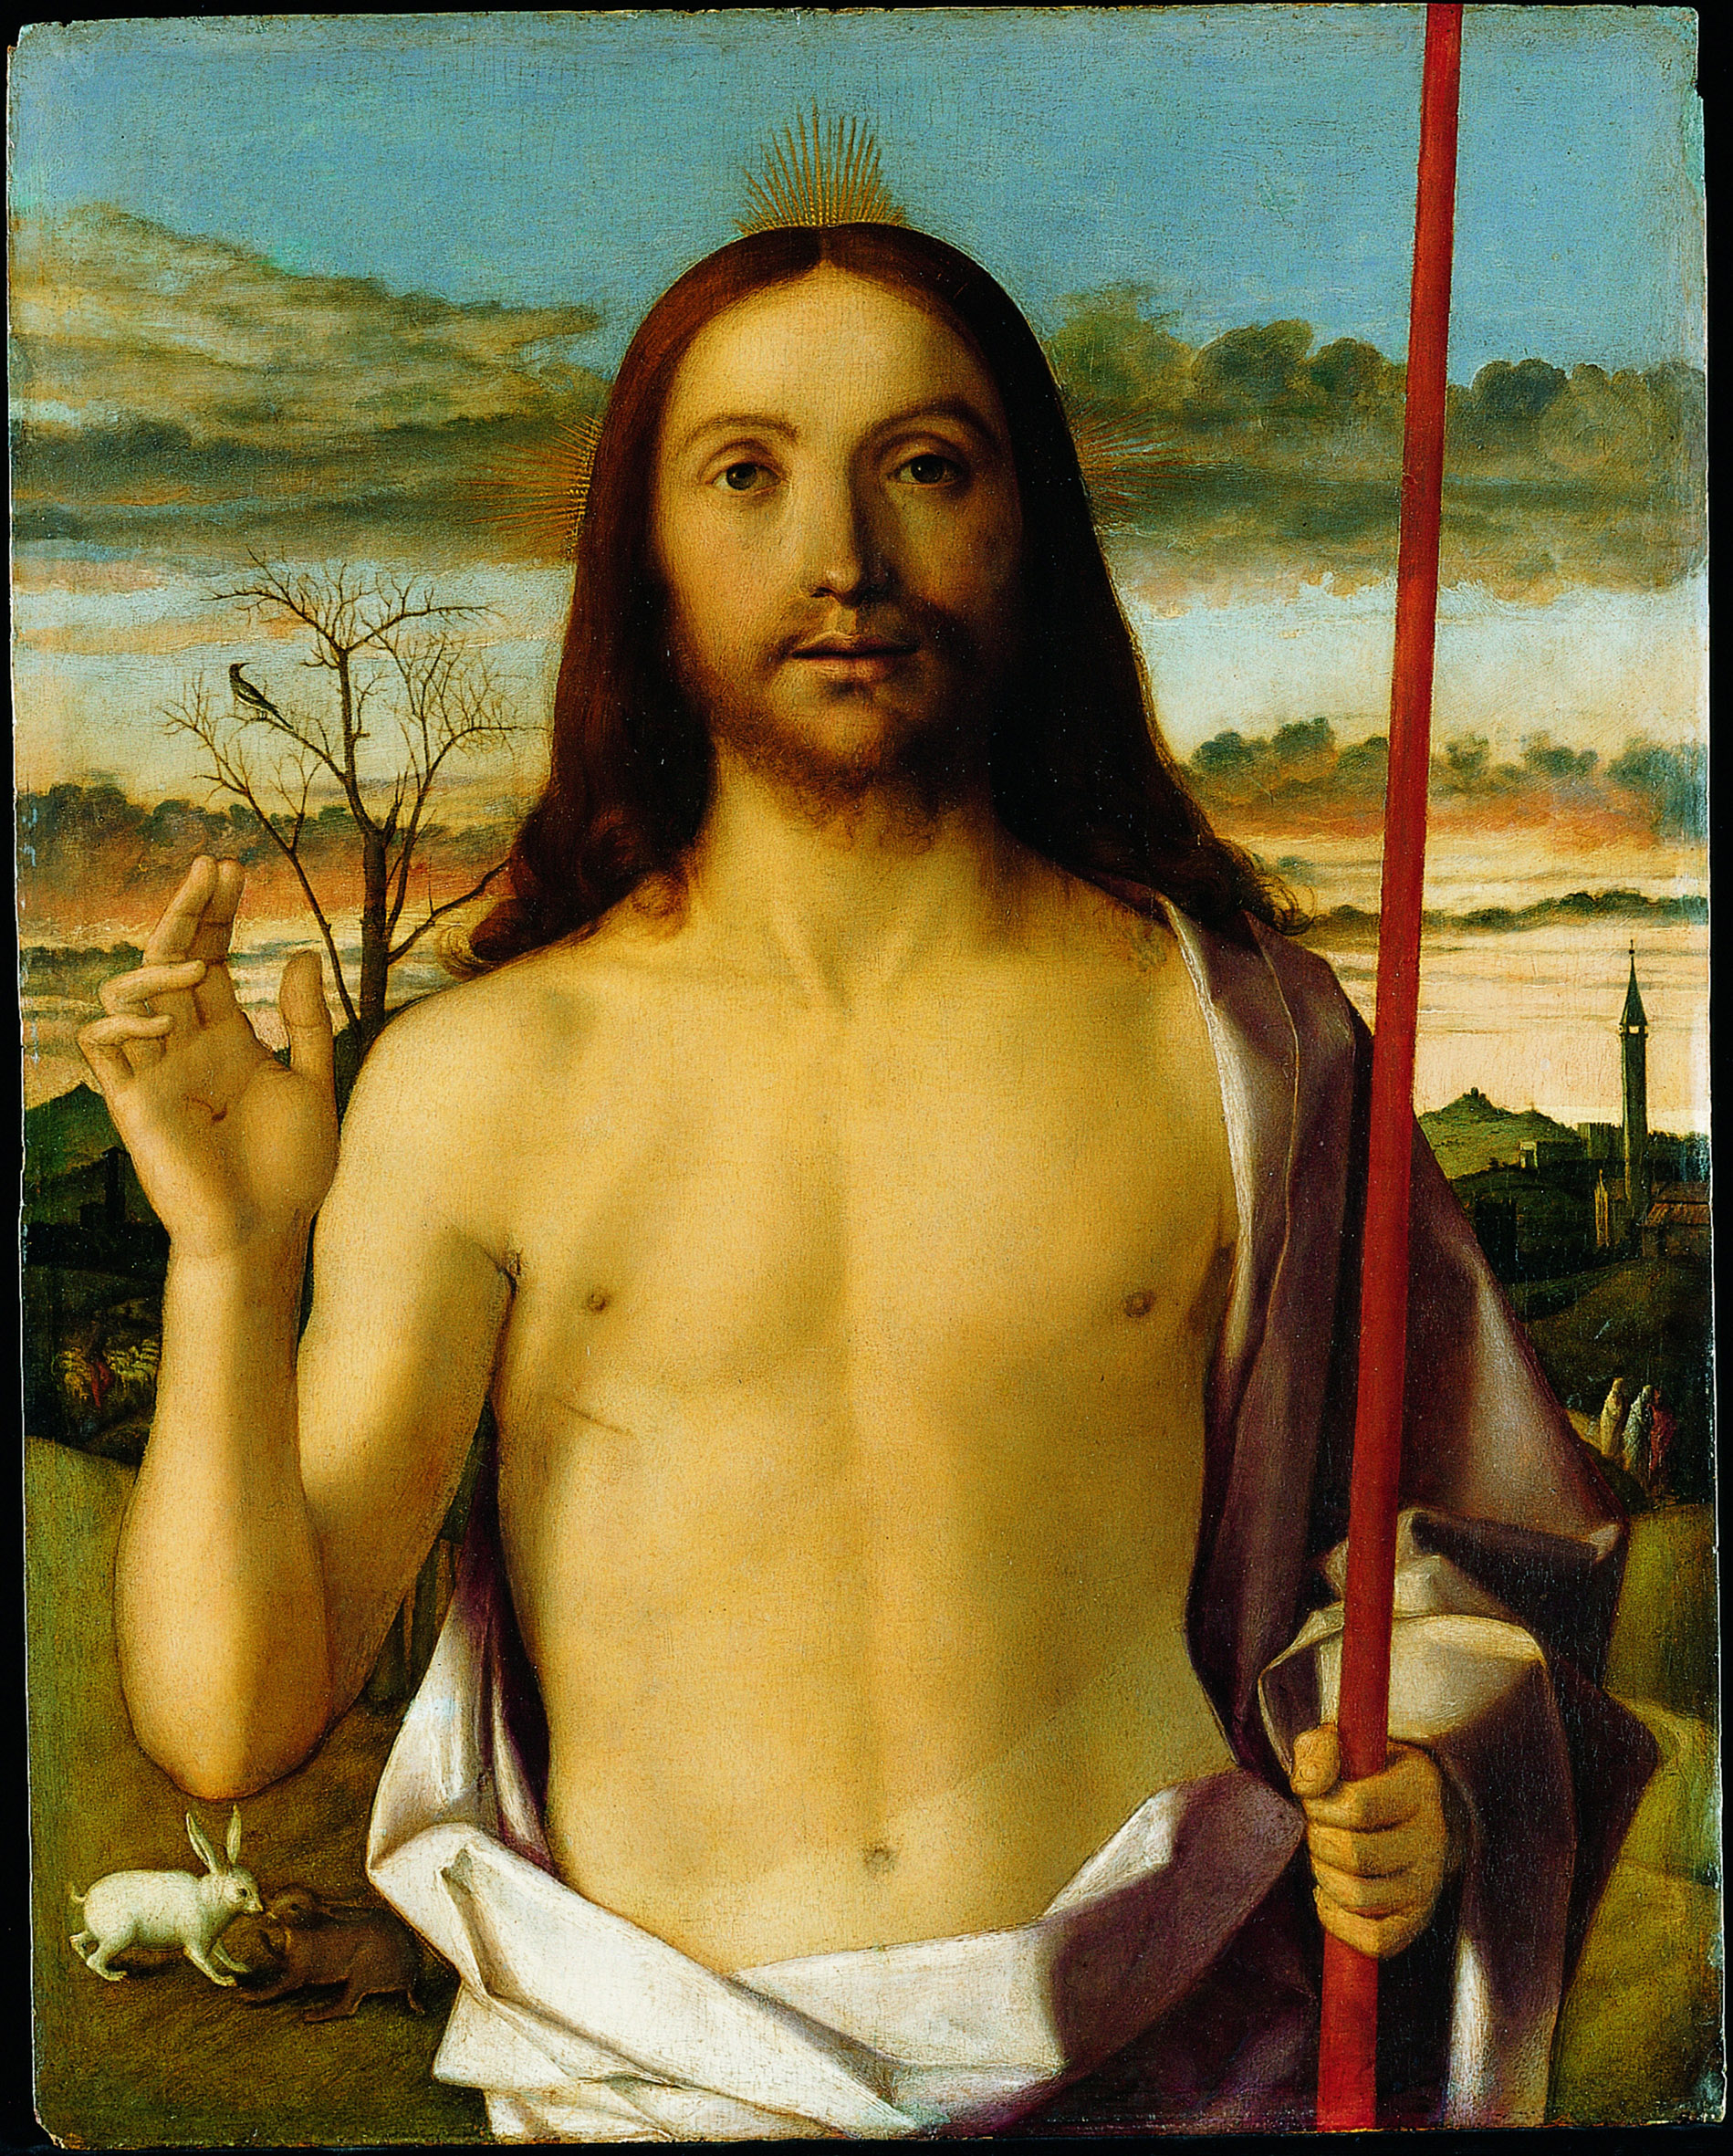 Cristo risorto benedicente, 1480-1485 circa